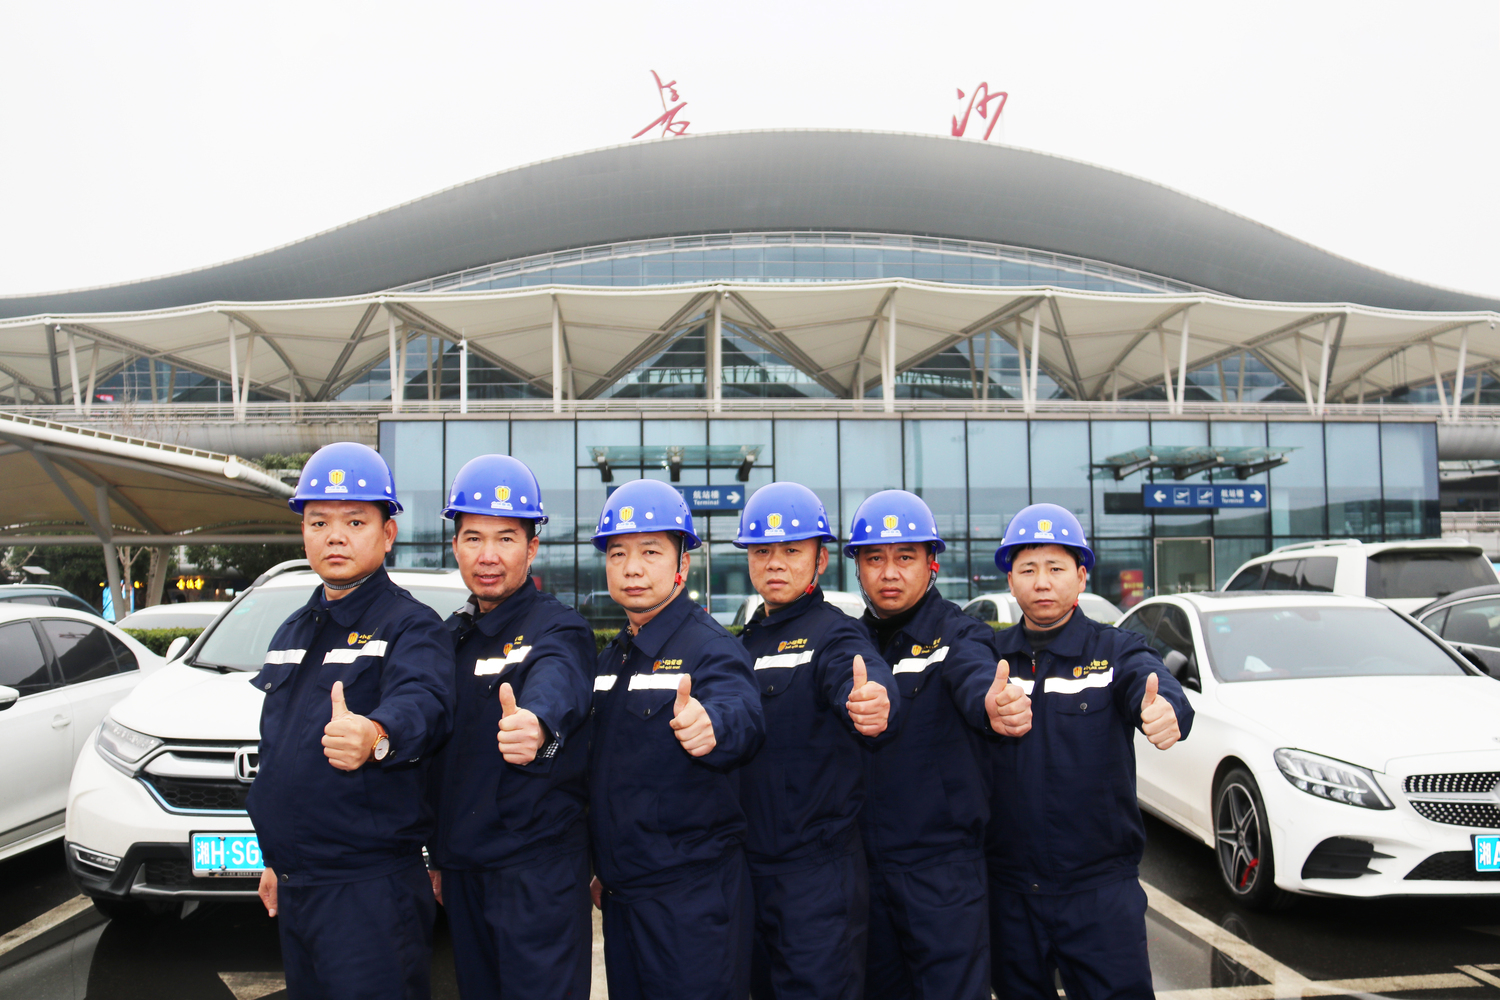 小快智造工程团队在长沙黄花机场施工前合影留念.JPG